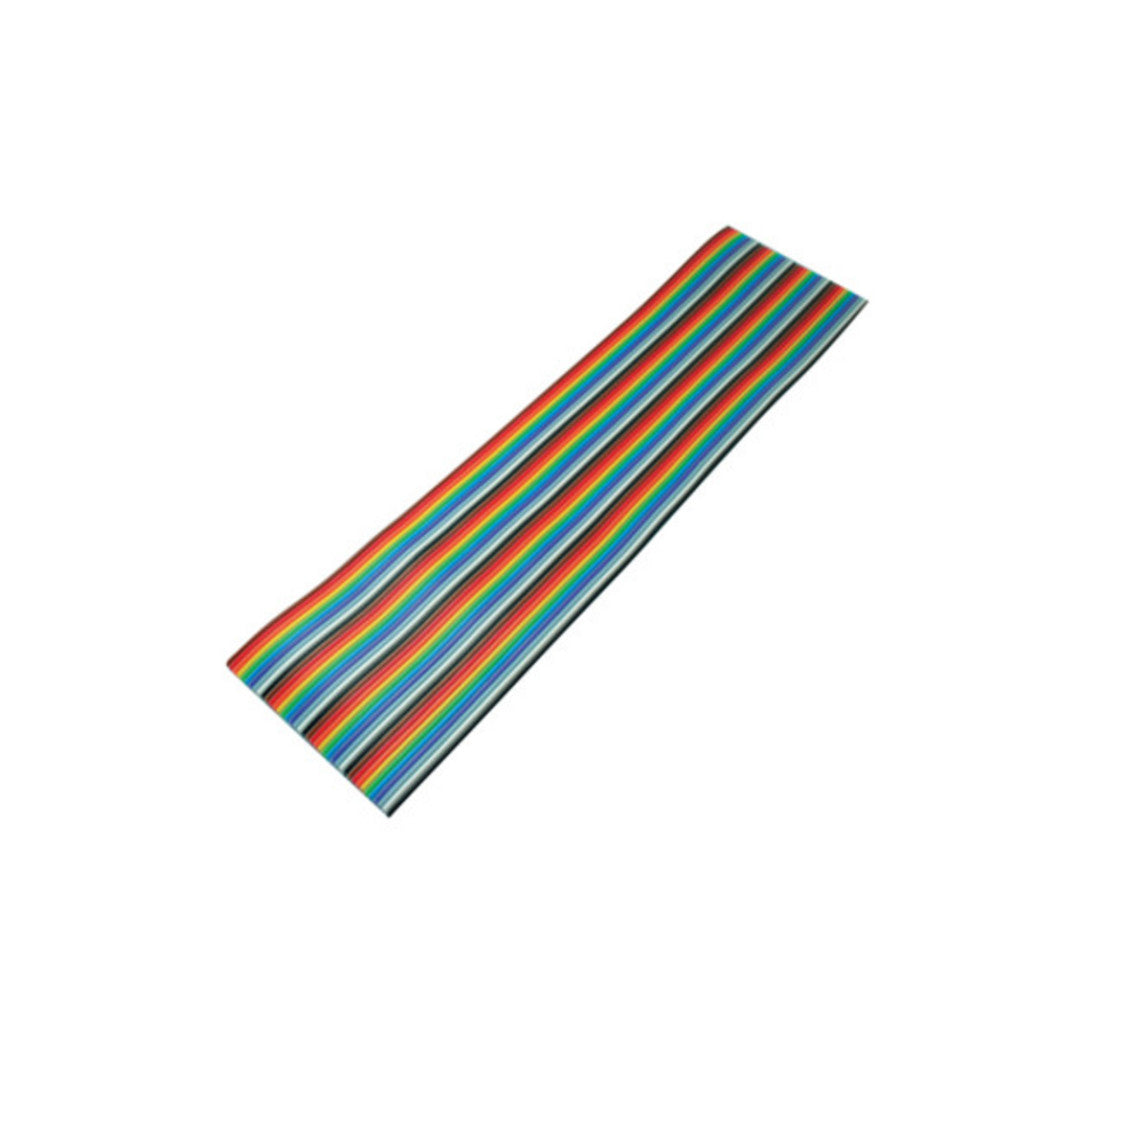 Flachkabel, farbig Raster 1,27 mm, 40 pin  10,00m   KB79072-1002